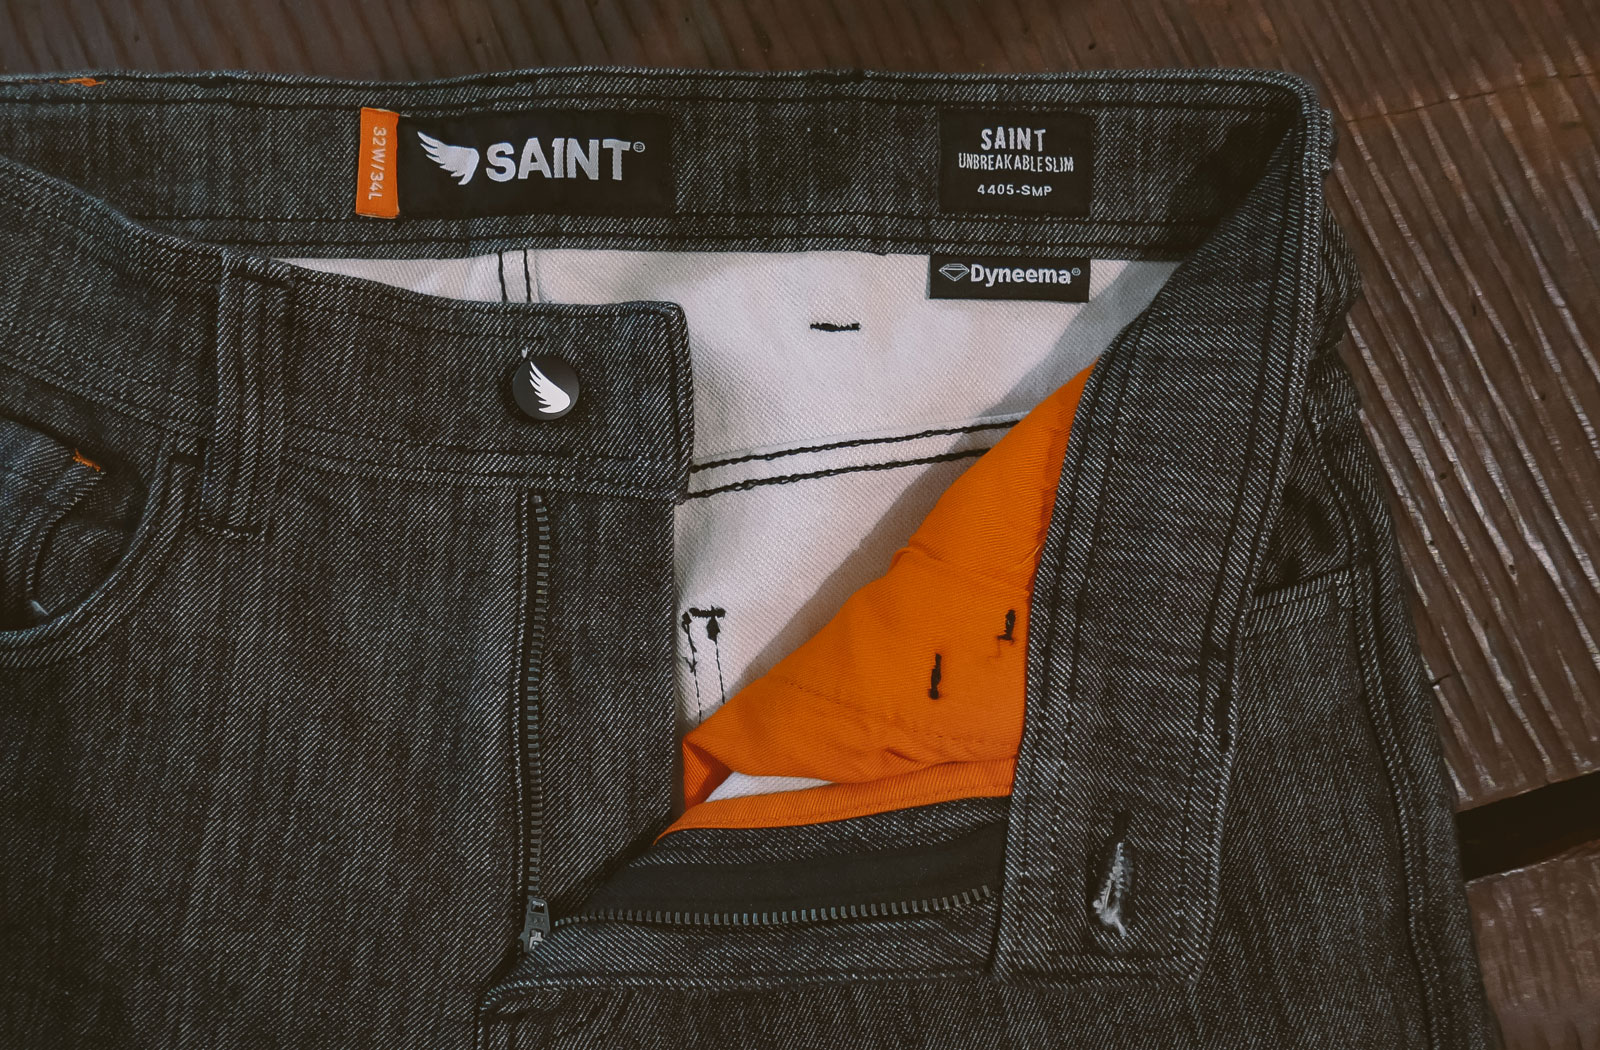 Saint Unbreakable Slim Jeans Review